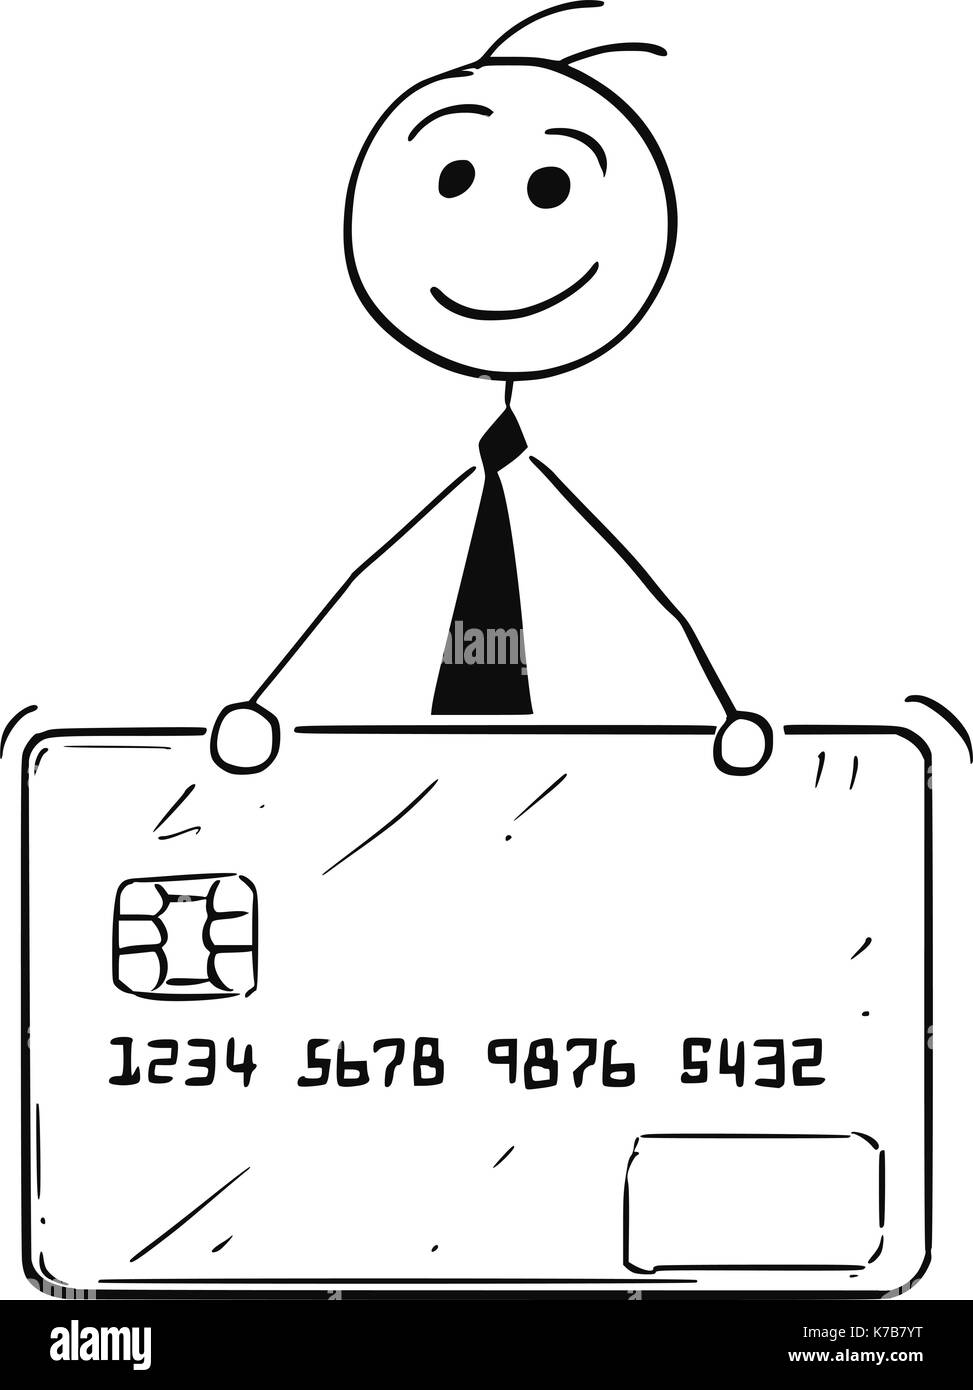 Pegatina De Una Tarjeta De Crédito De Dibujos Animados Ilustración del  Vector - Ilustración de negocios, freehand: 147717887